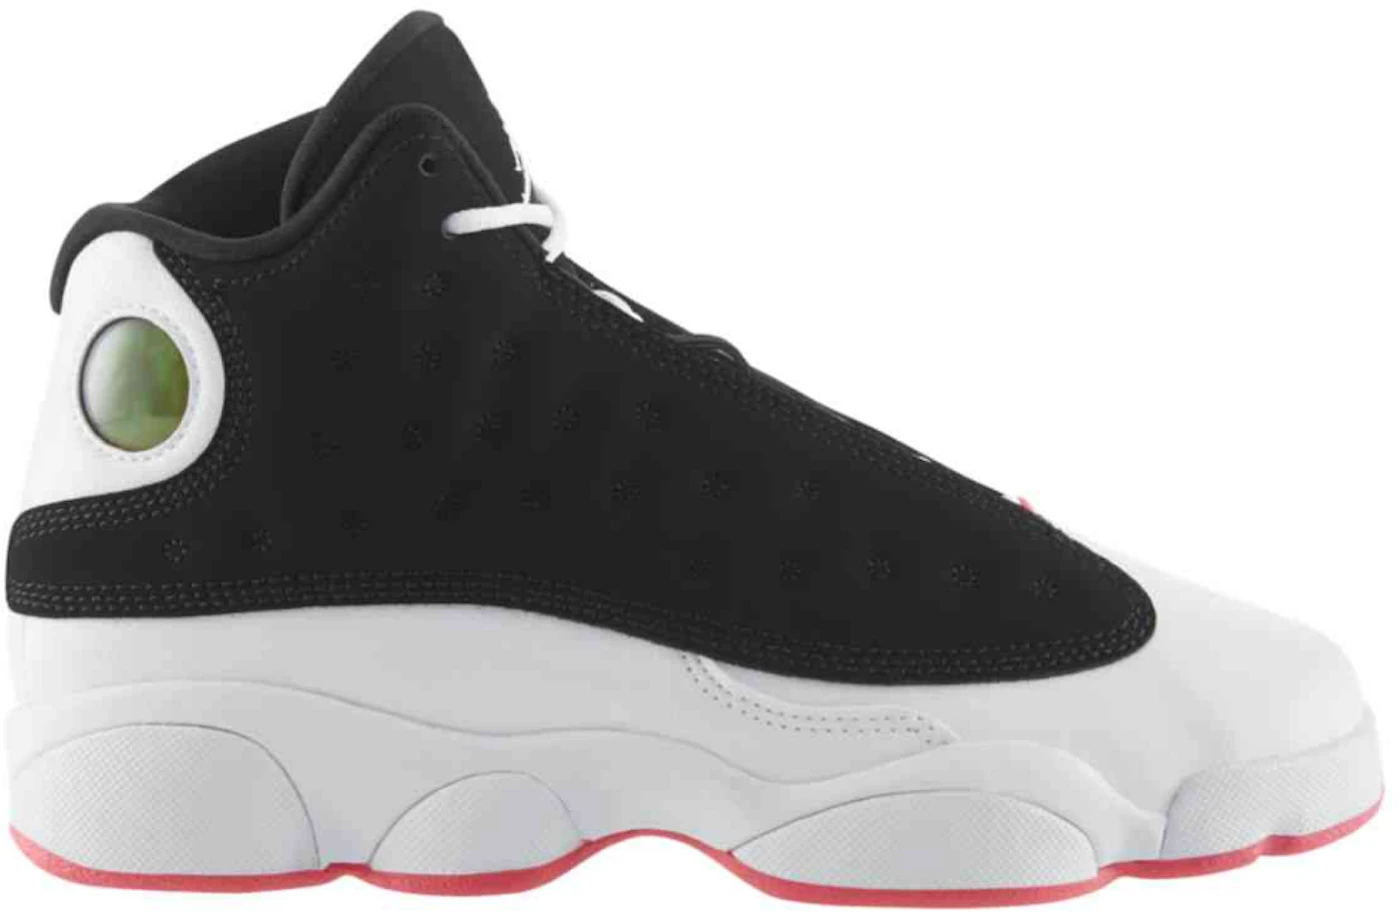 Air Jordan 13s in Black, Hyper Pink, and White  Air jordans, Nike air jordan  retro, Sneaker collection